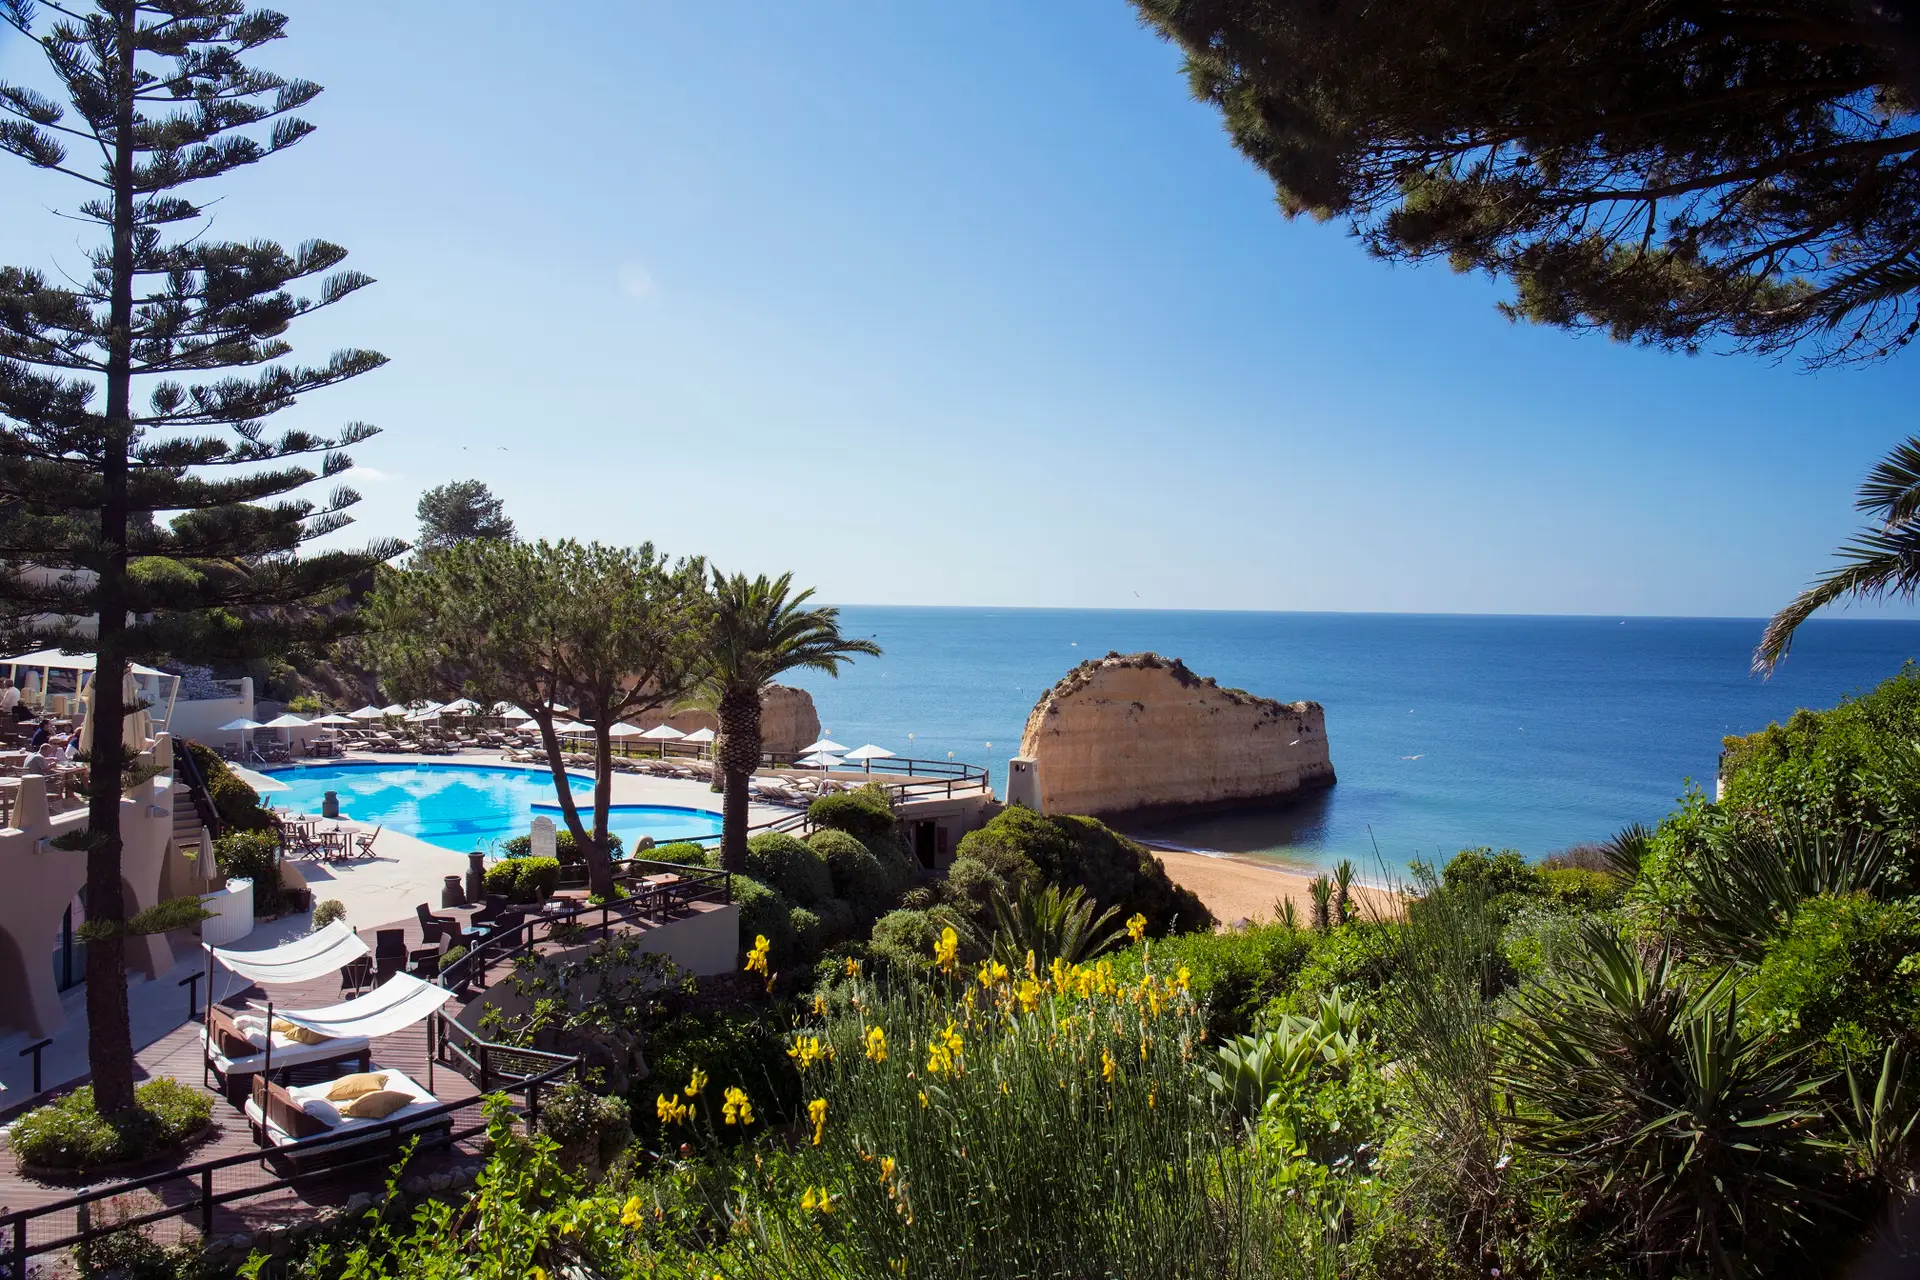 Paraíso de talassoterapia, hotel de luxo no Algarve, reabre com campos de pickleball e novos programas de bem-estar